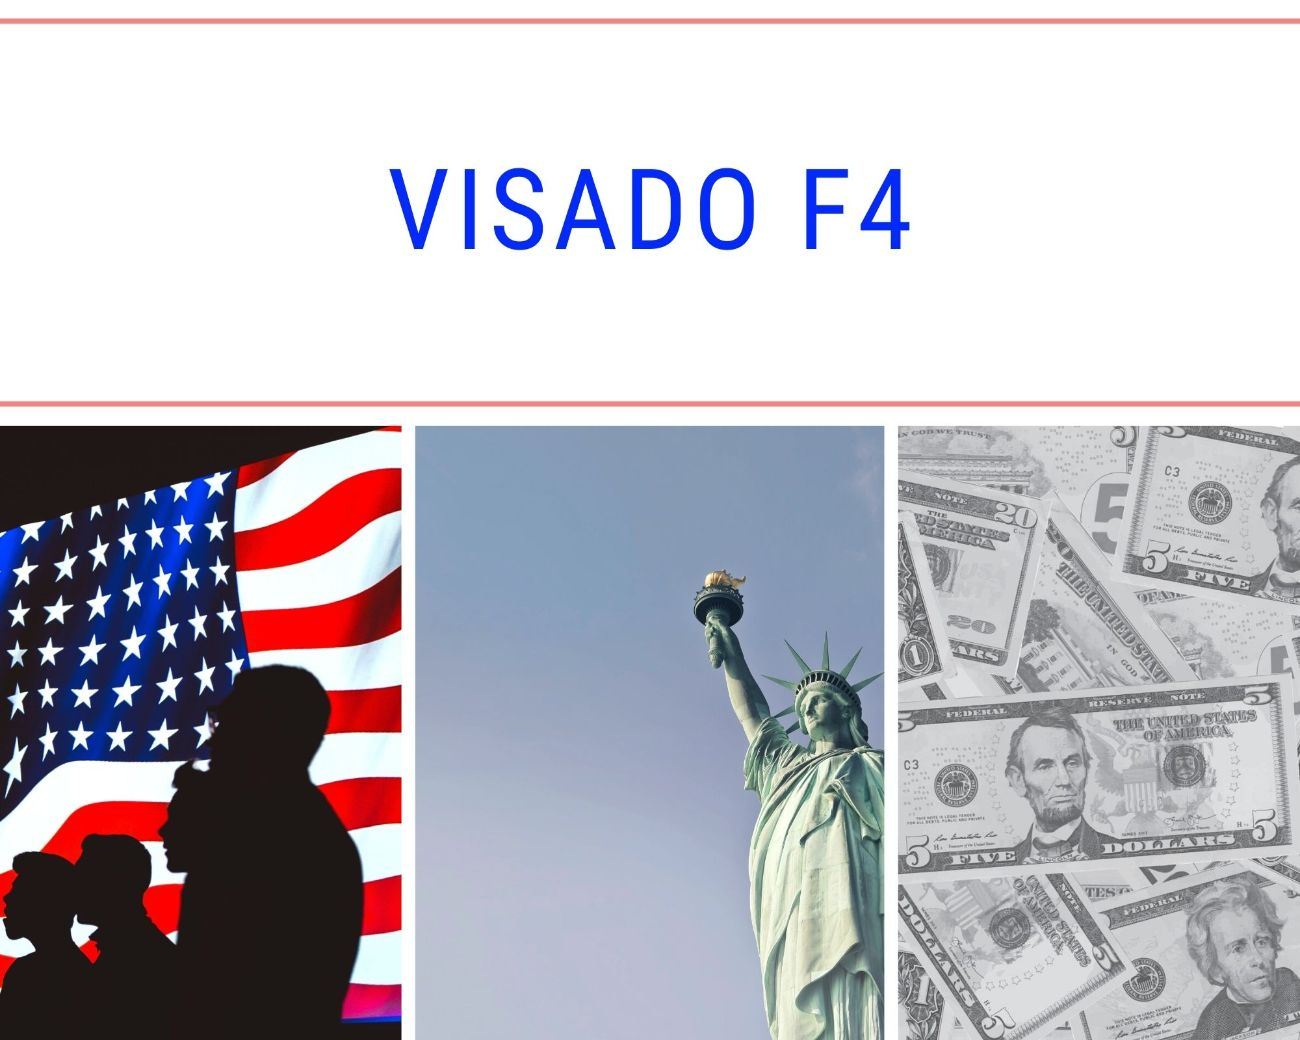 Una bandera de los Estados Unidos, la Estatua de la Libertad y dinero en dólares. Visado F4 para inmigrantes.